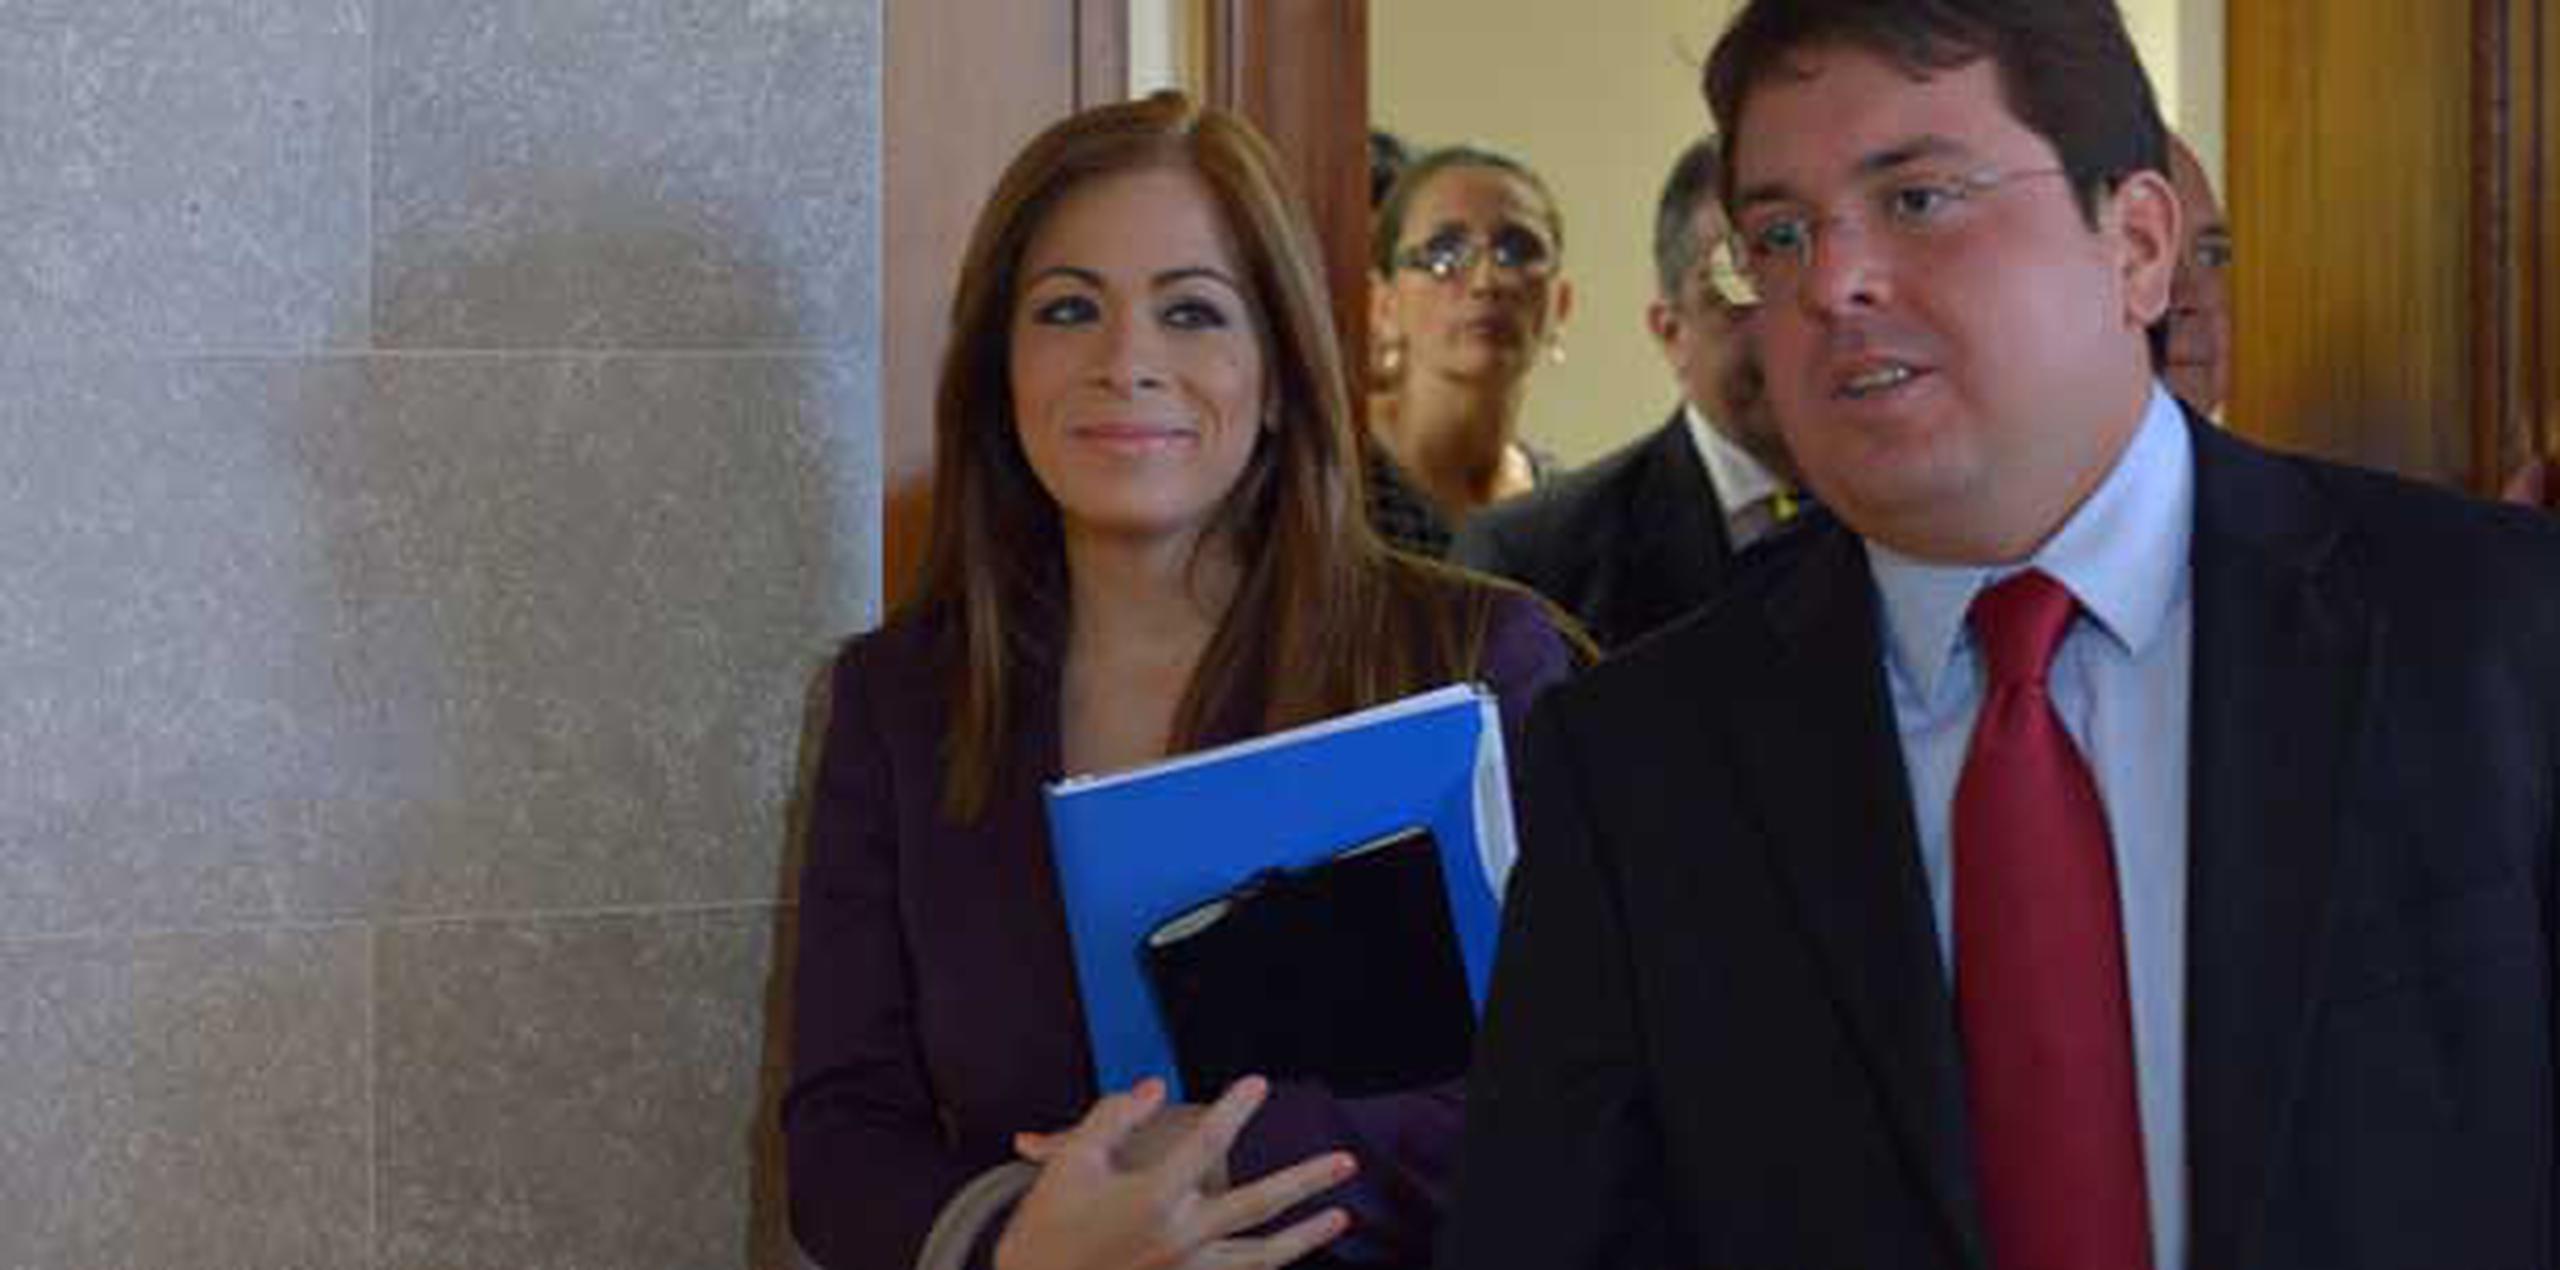 La vista preliminar contra Yesenia Torres Figueroa estaba prevista para comenzar hoy, pero las partes acordaron transferir el caso para el 23 de abril a la 1:30 p.m. (jose.rodriguez1@gfrmedia.com)